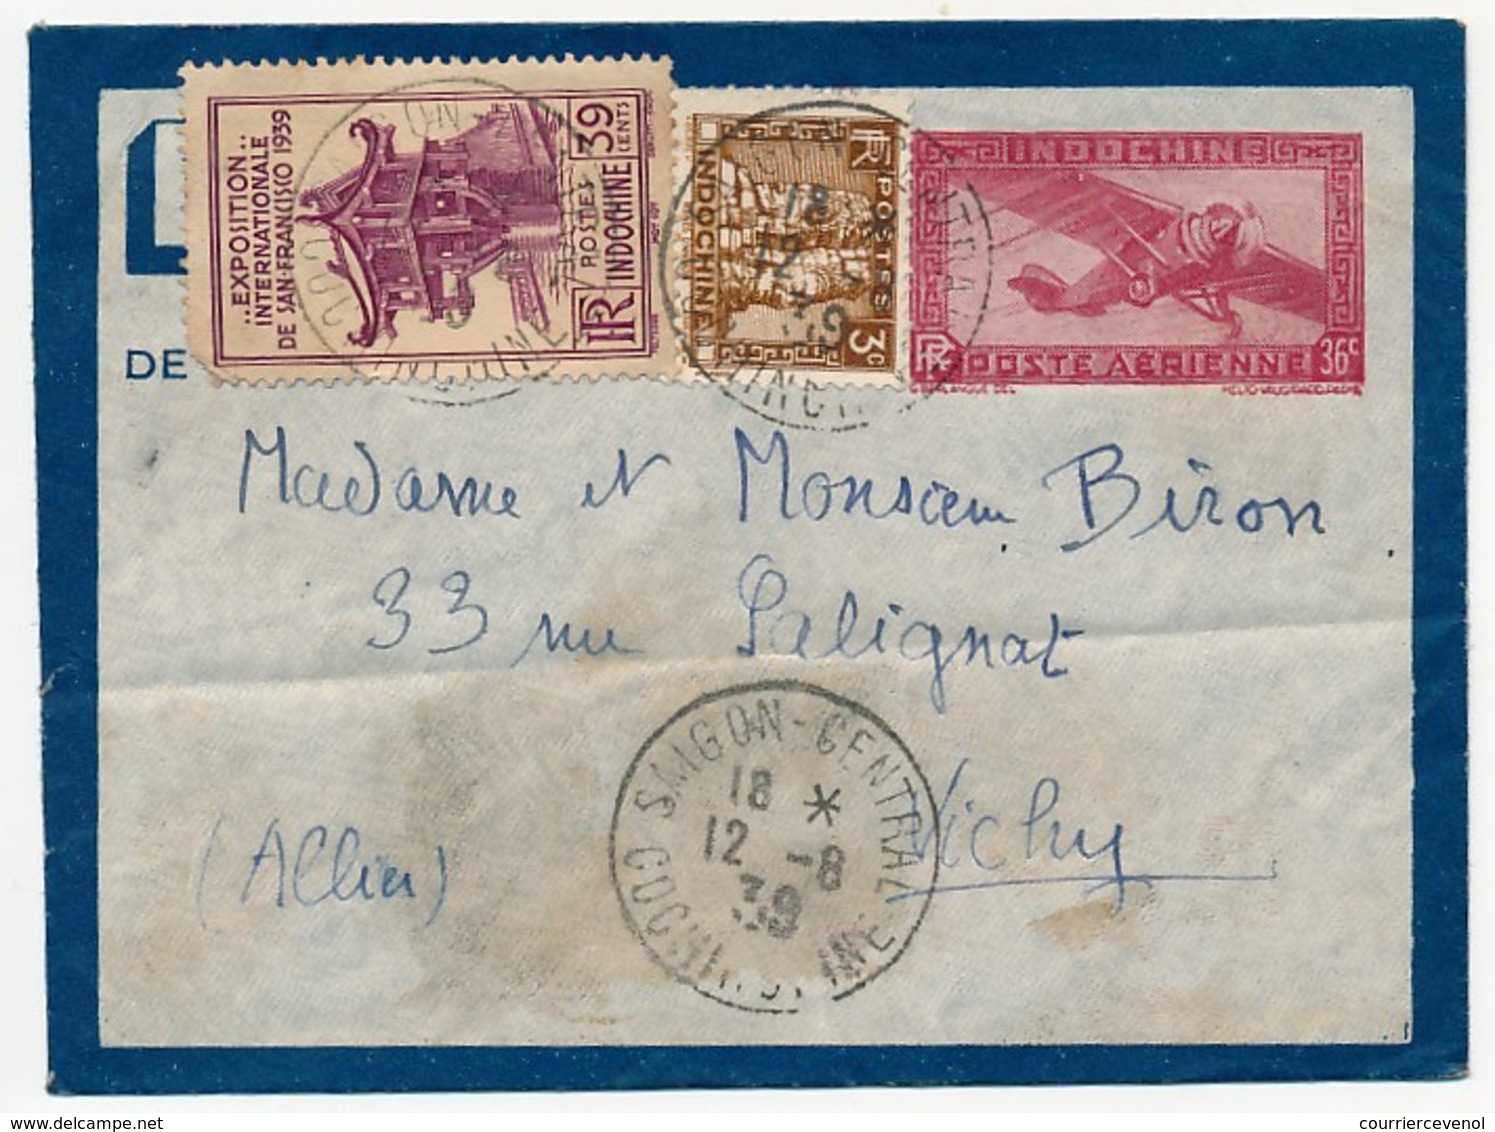 INDOCHINE - Lot de 10 lettres diverses 1932 à 1940, recommandée, avions, aérogrammes...